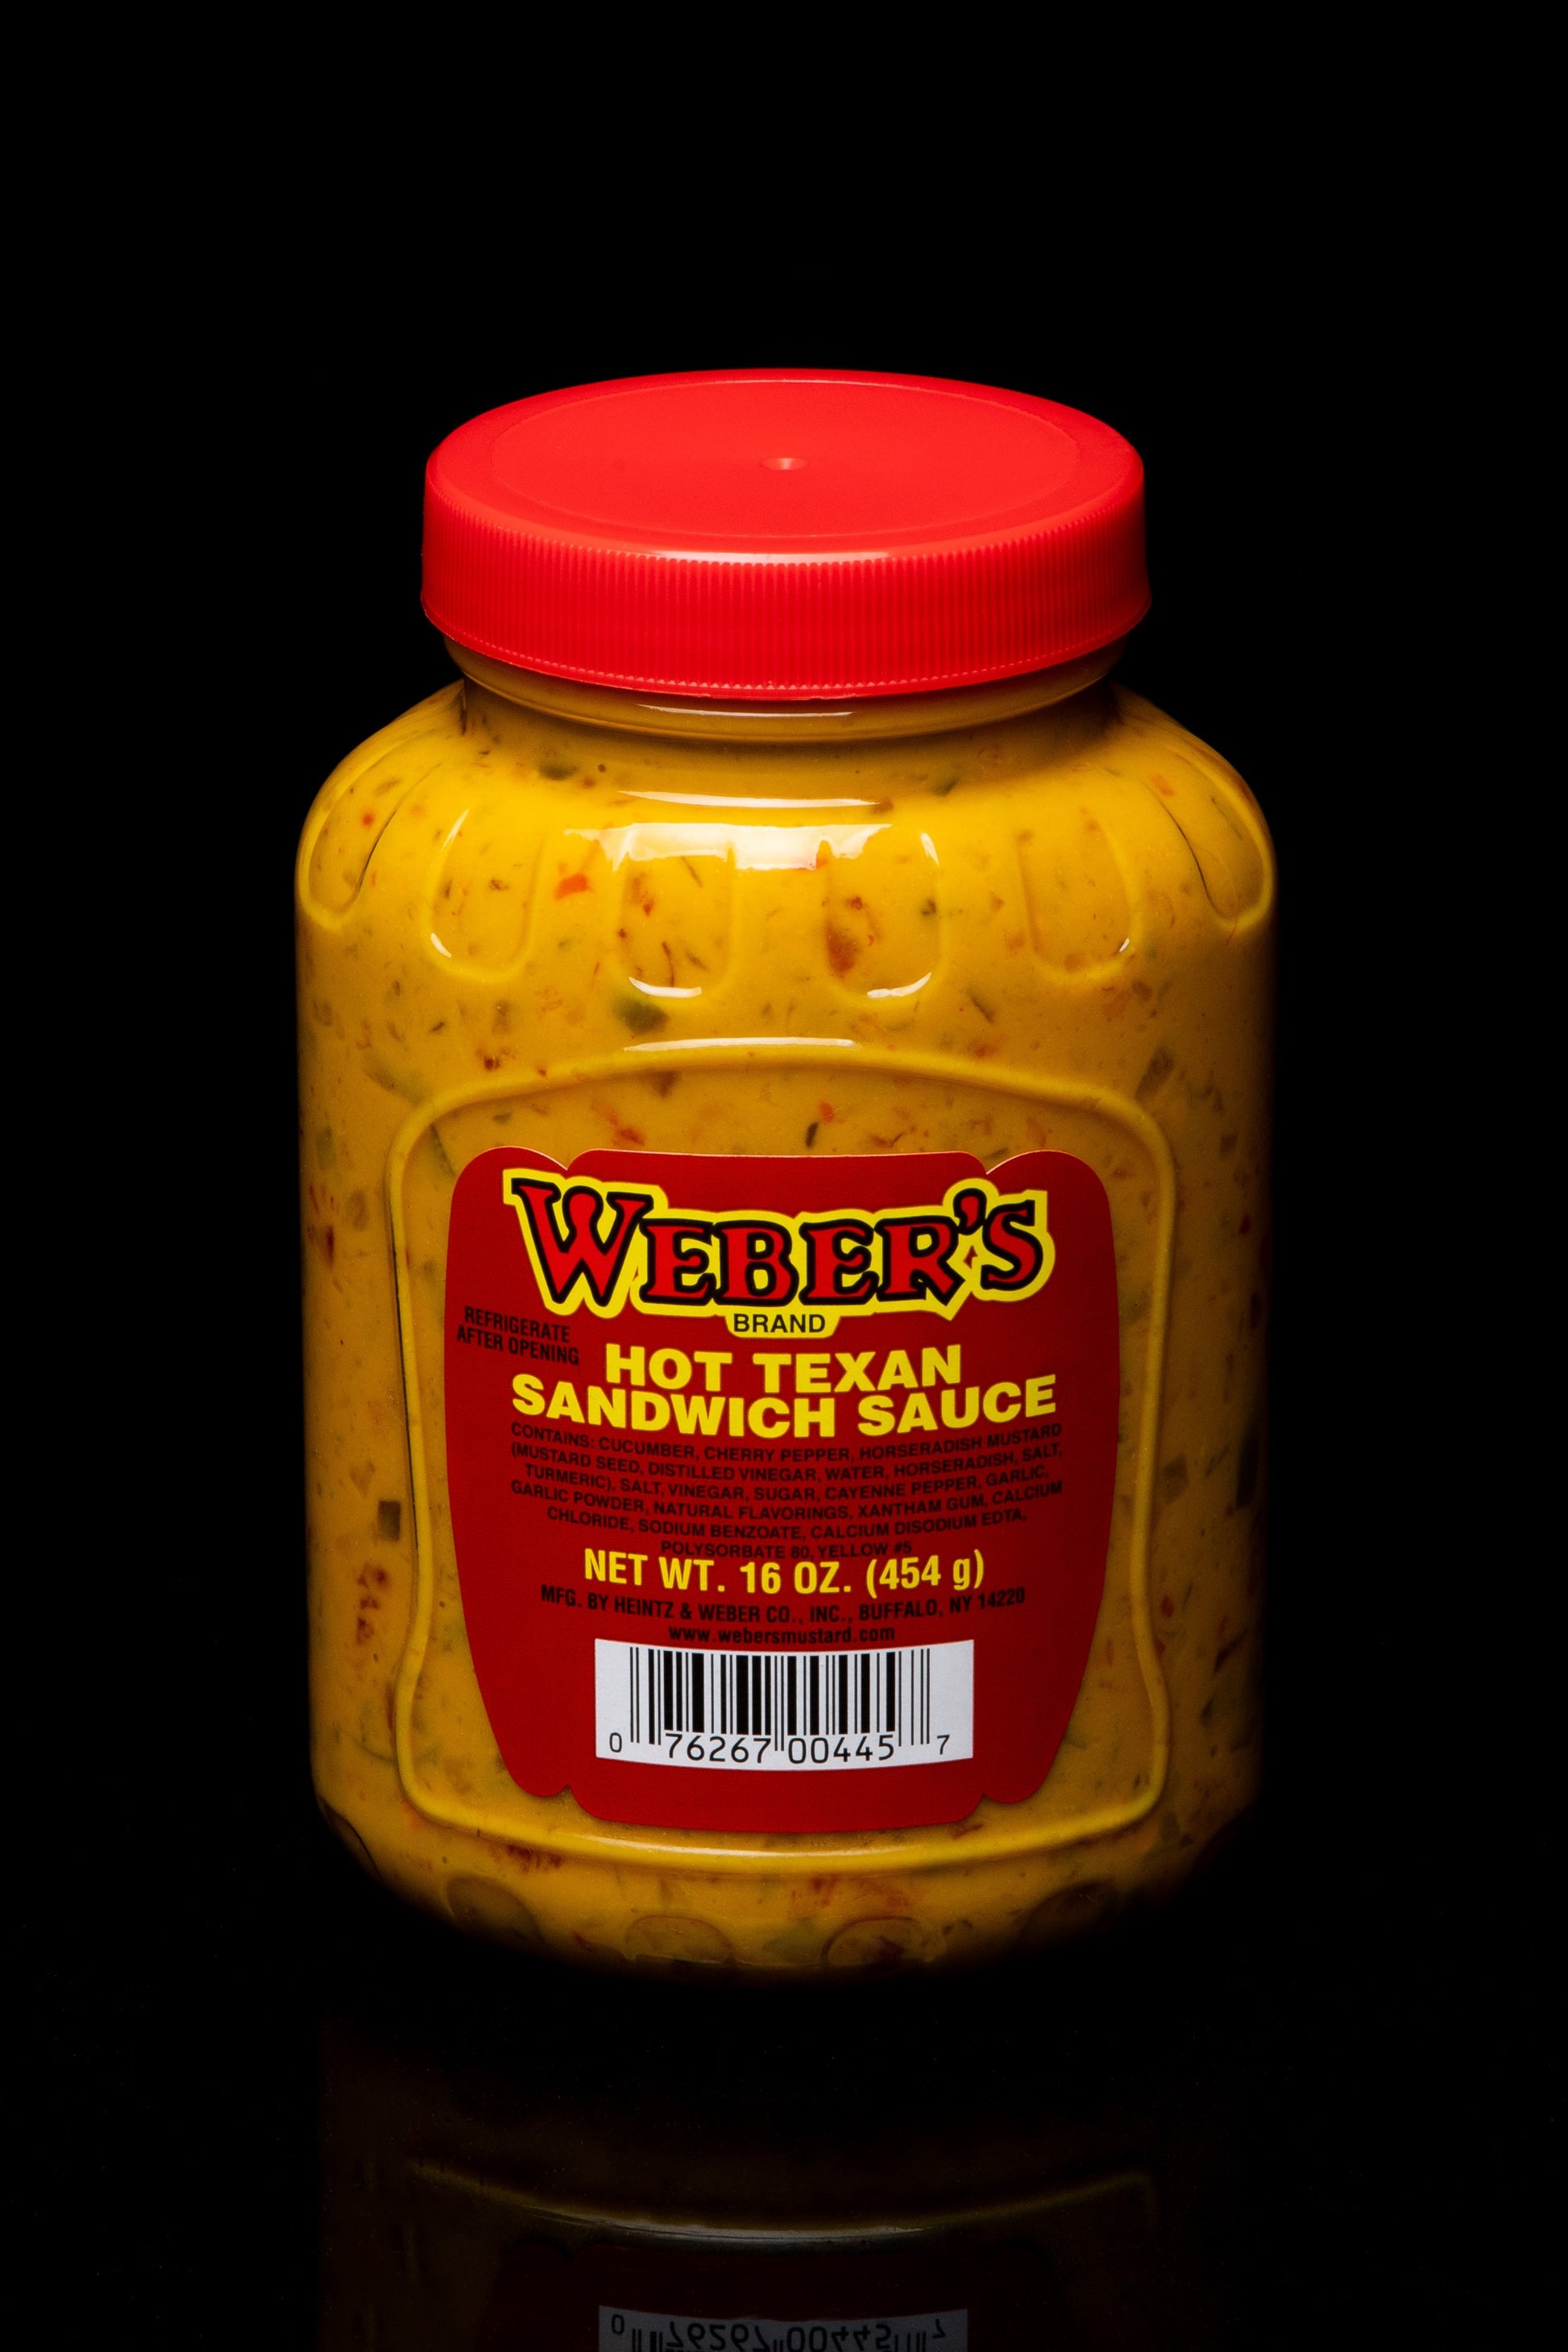 Weber's Brand Hot Texan Sandwich Sauce. Net WT. 16 OZ. (454 g).